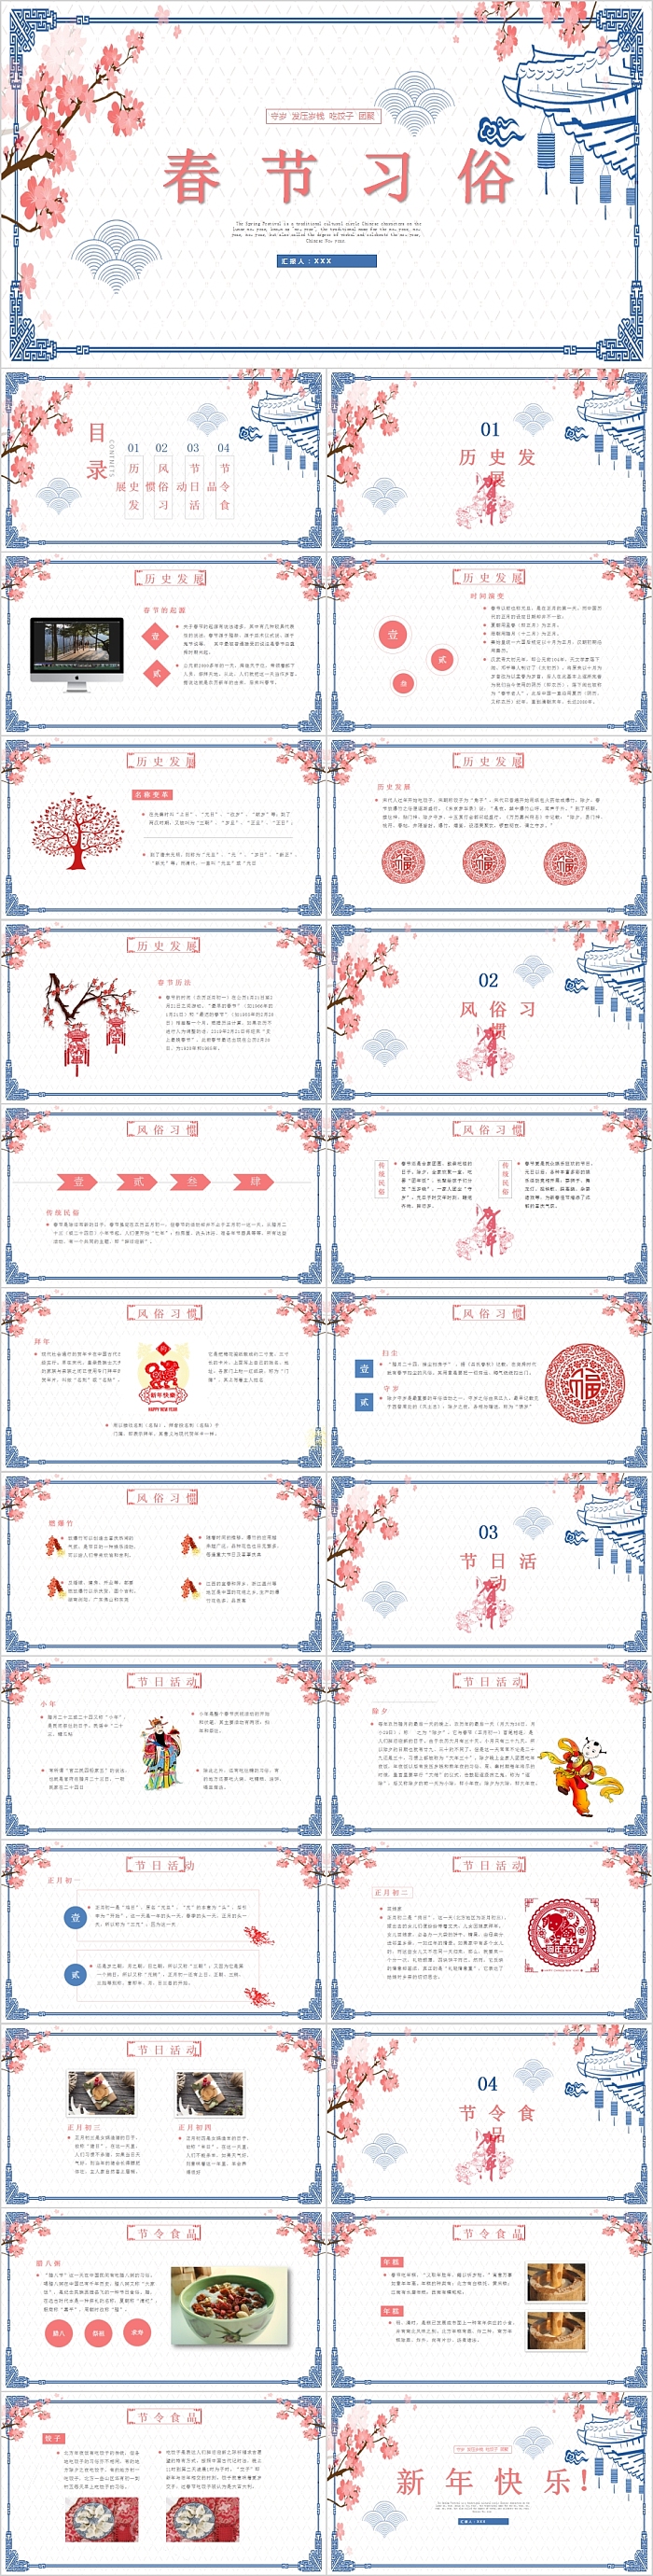 春节习俗传统节日传统文化介绍PPT模板